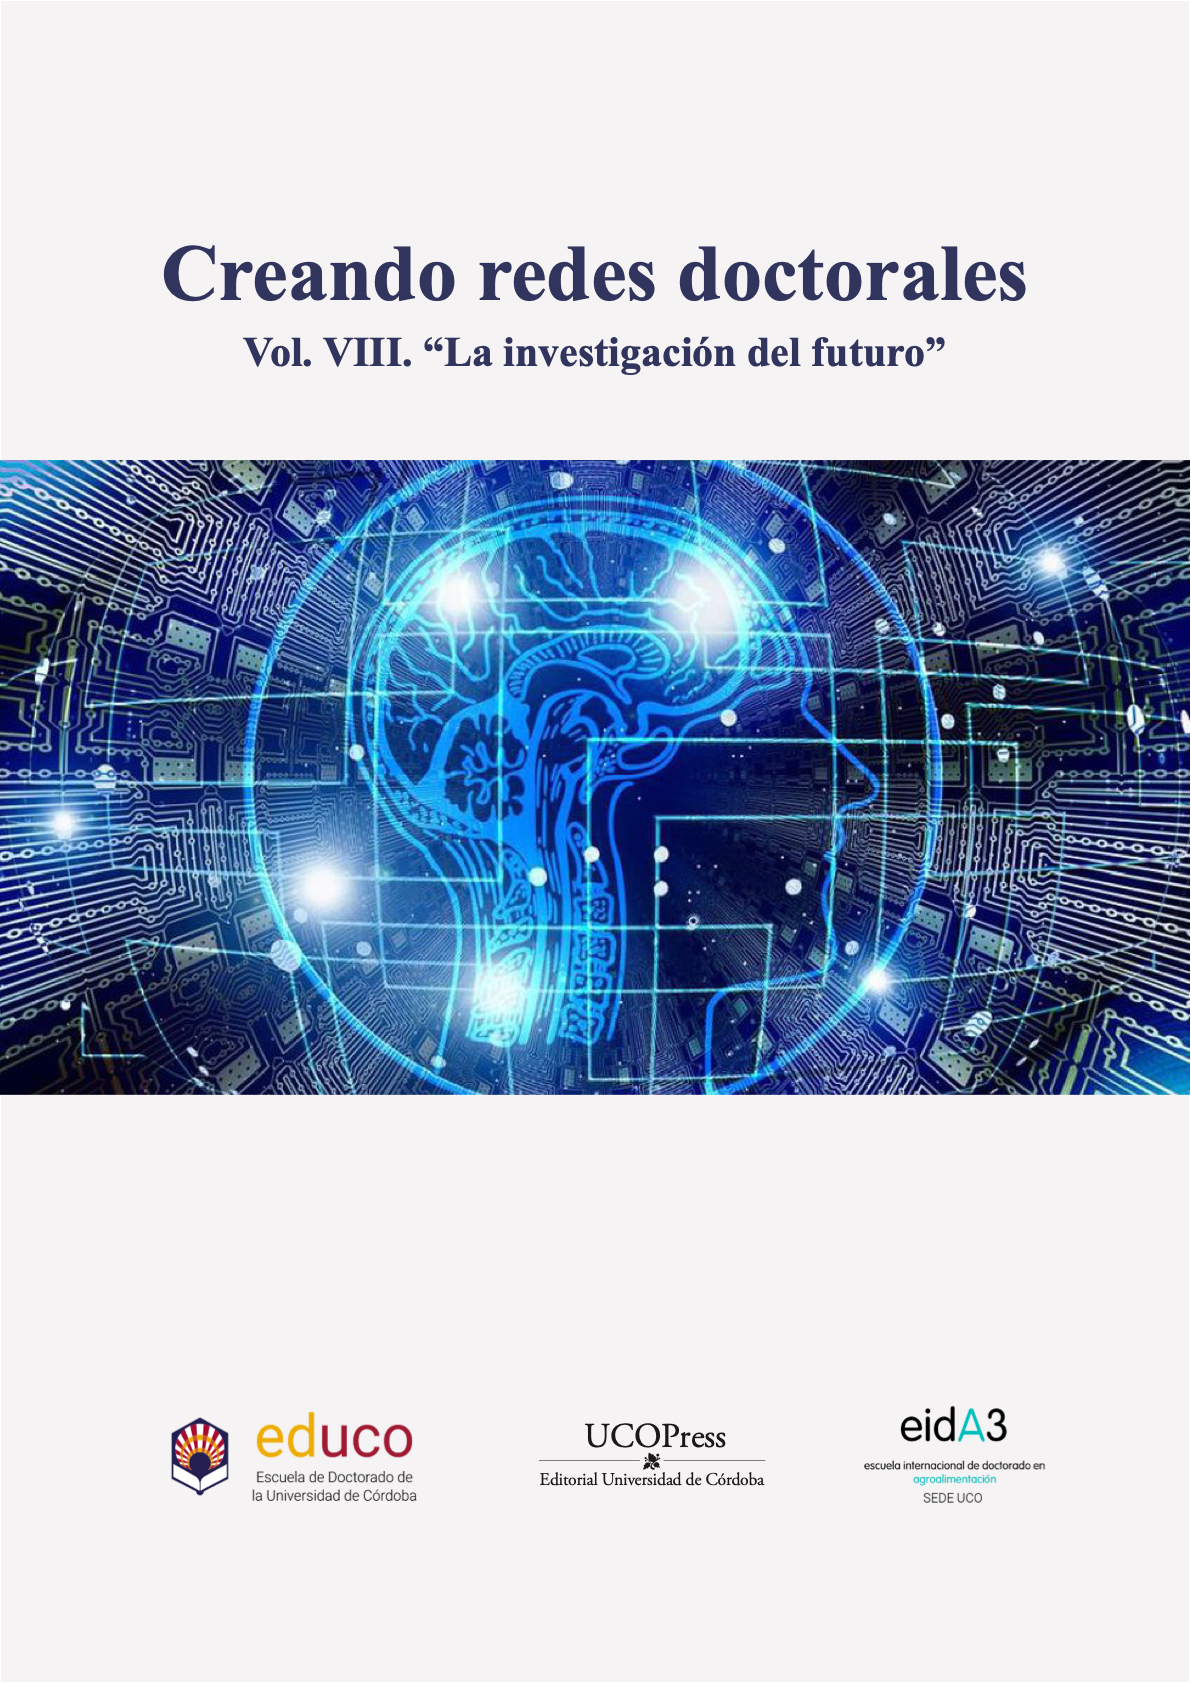 Imagen de portada del libro Creando redes doctorales